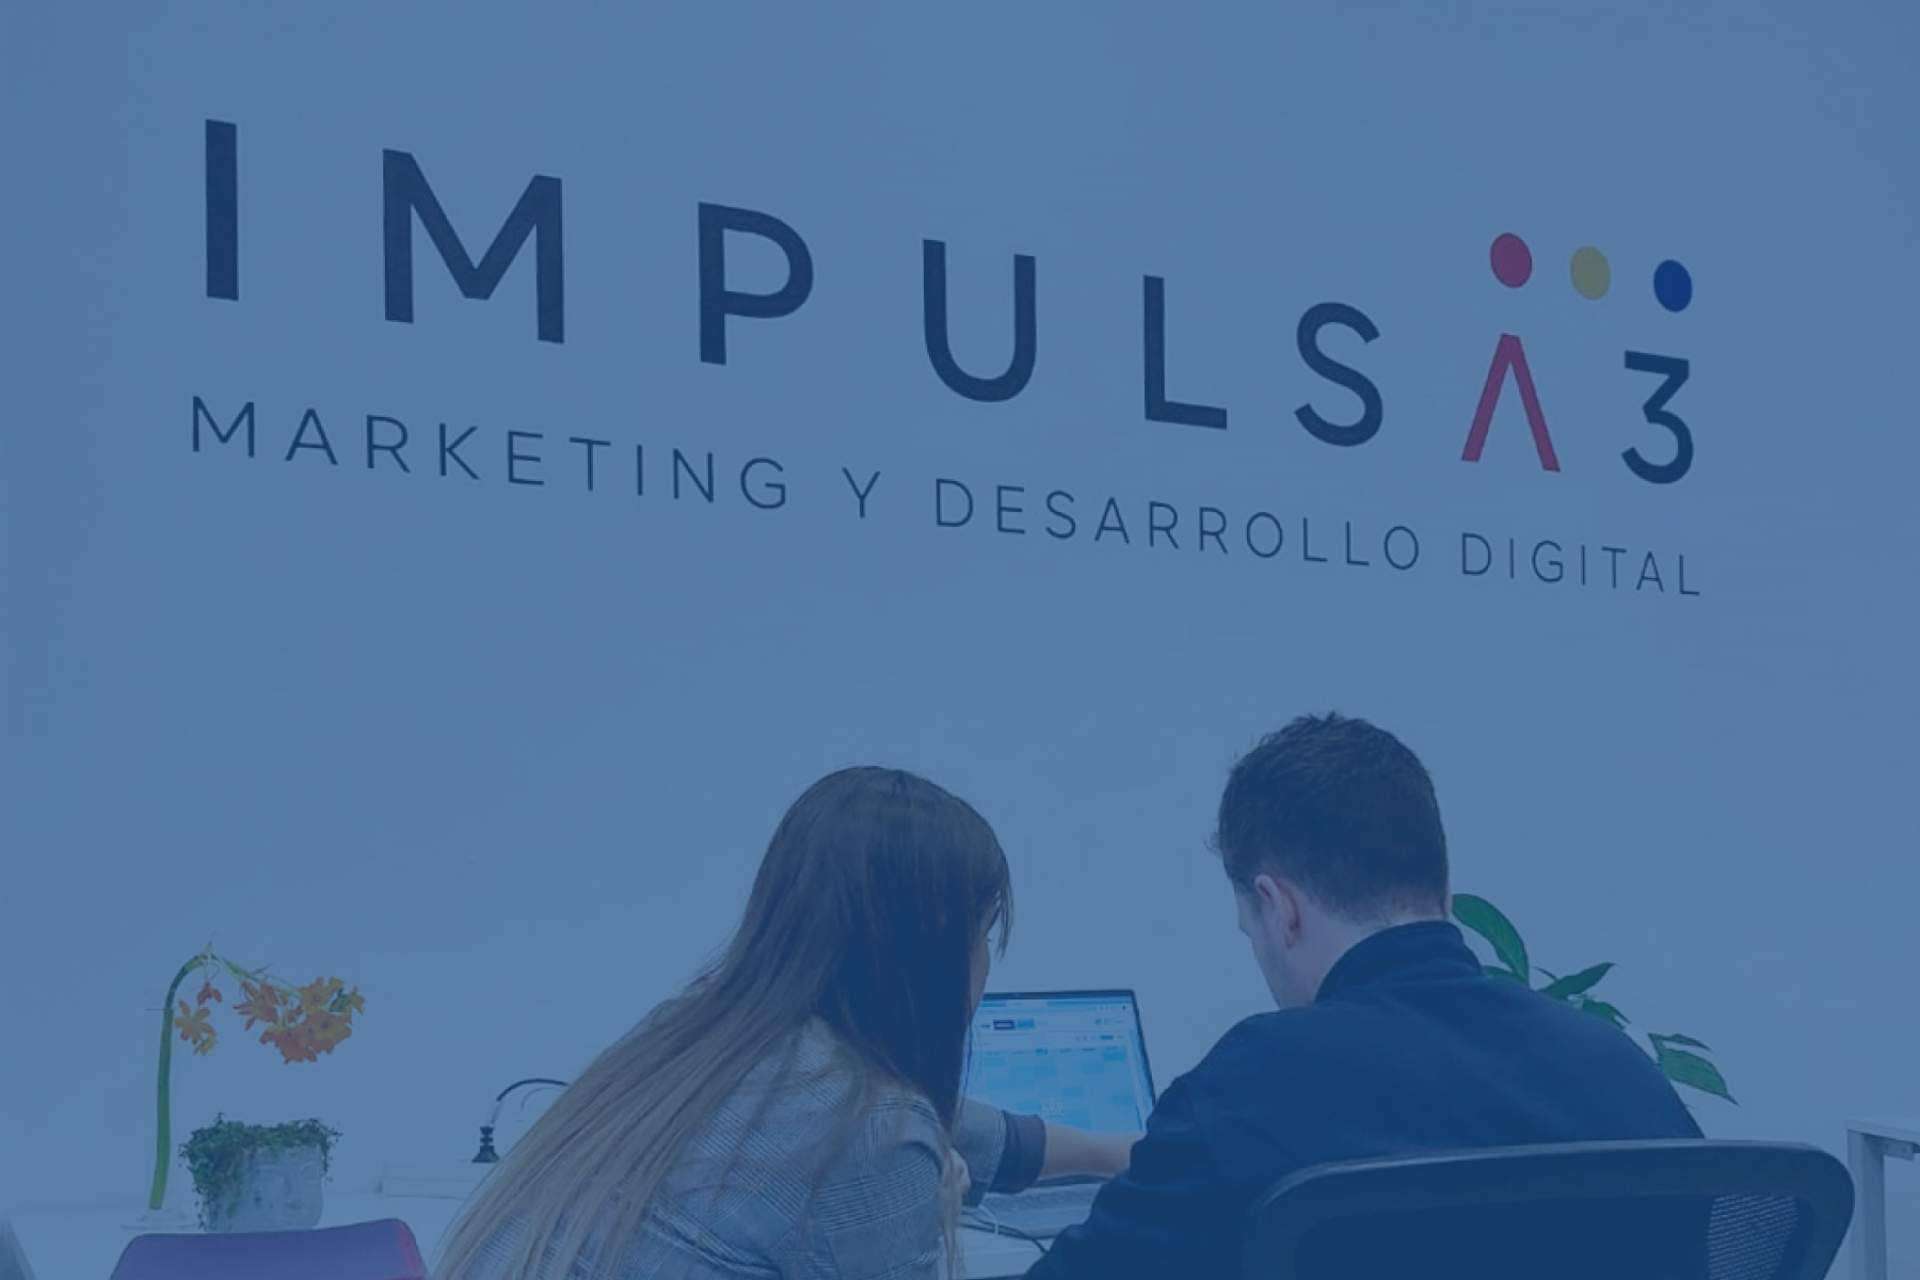 IMPULSA3, el partner digital para impulsar las ventas gracias al marketing y a la tecnología